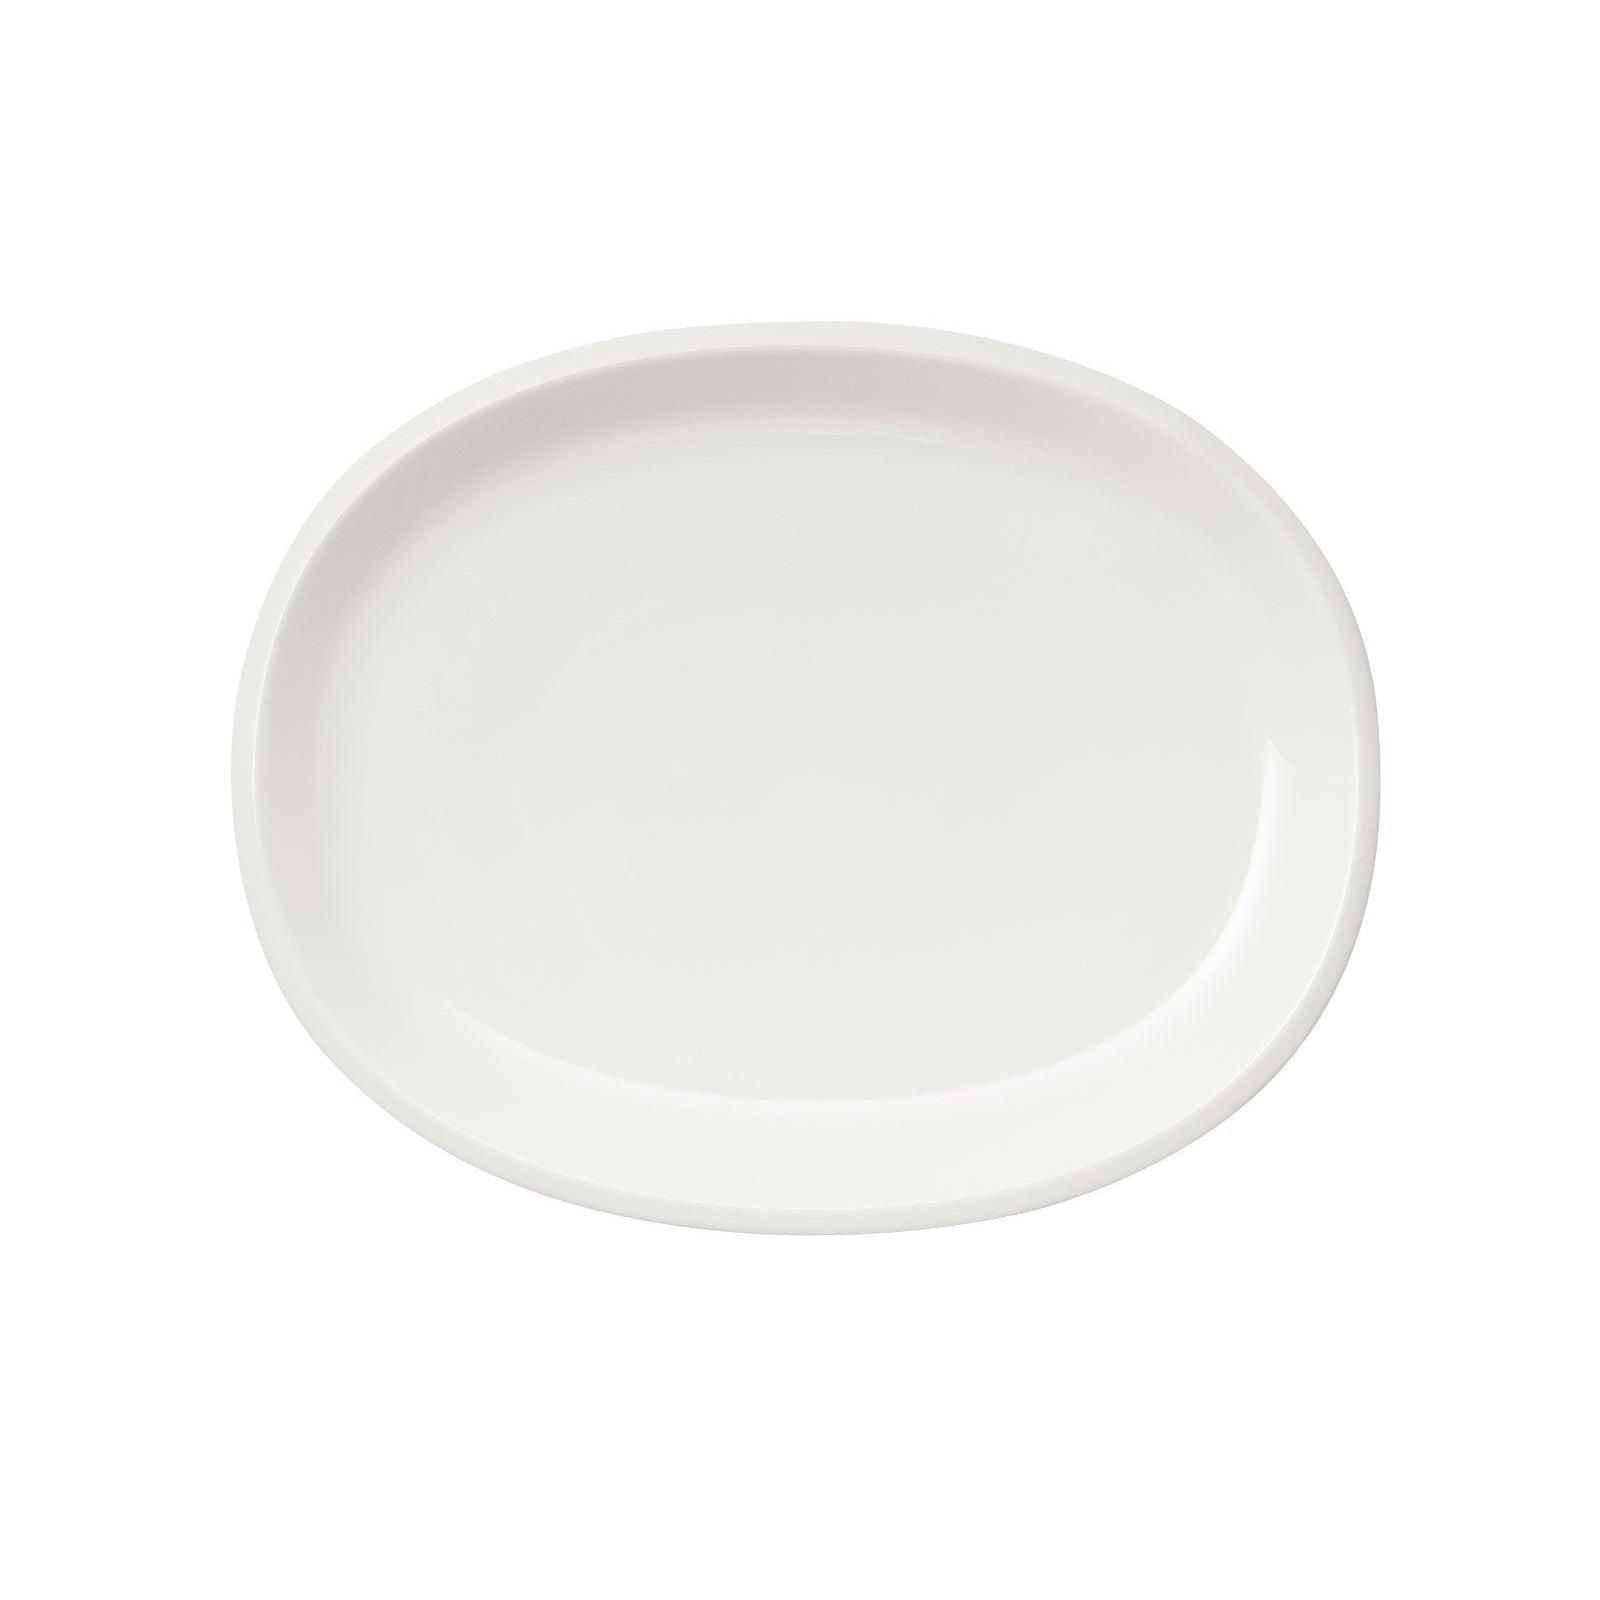 Iittala Raami serveerplaat wit, 35 cm